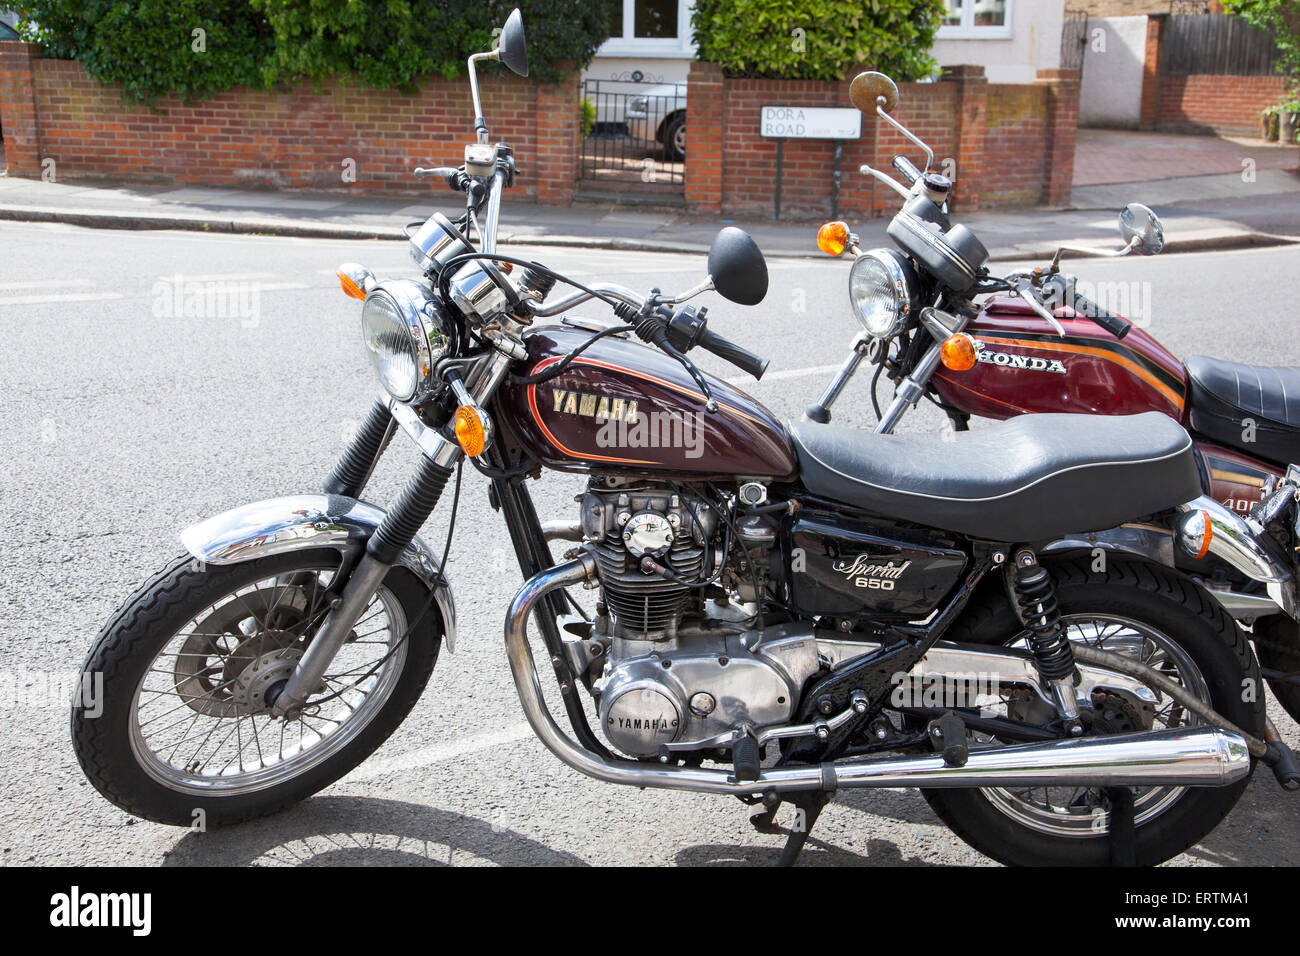 Eine spezielle 650 Yamaha und Honda 400 Motorräder parken auf der Straße Stockfoto